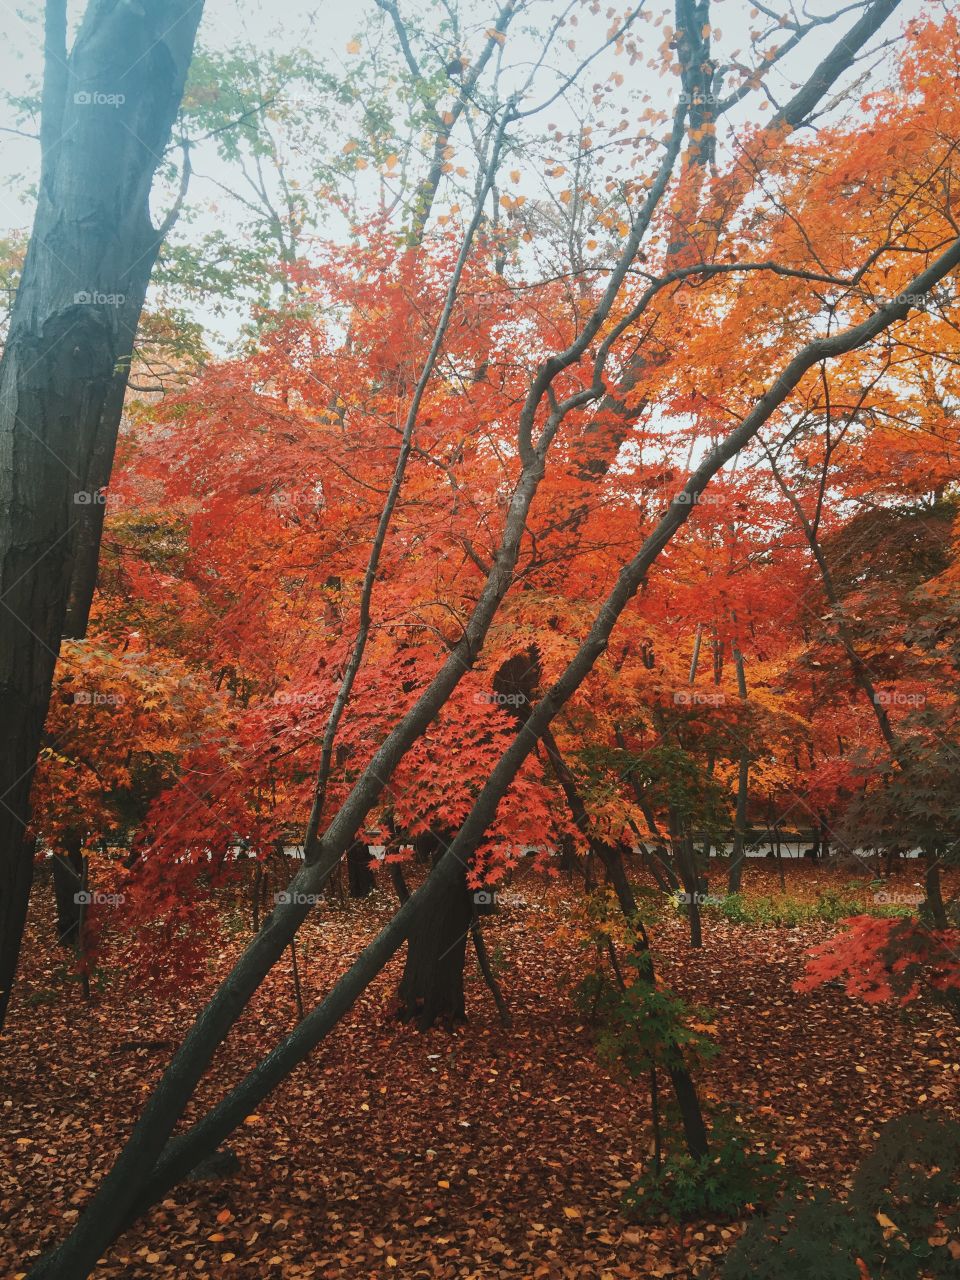 Red autumn 2015
